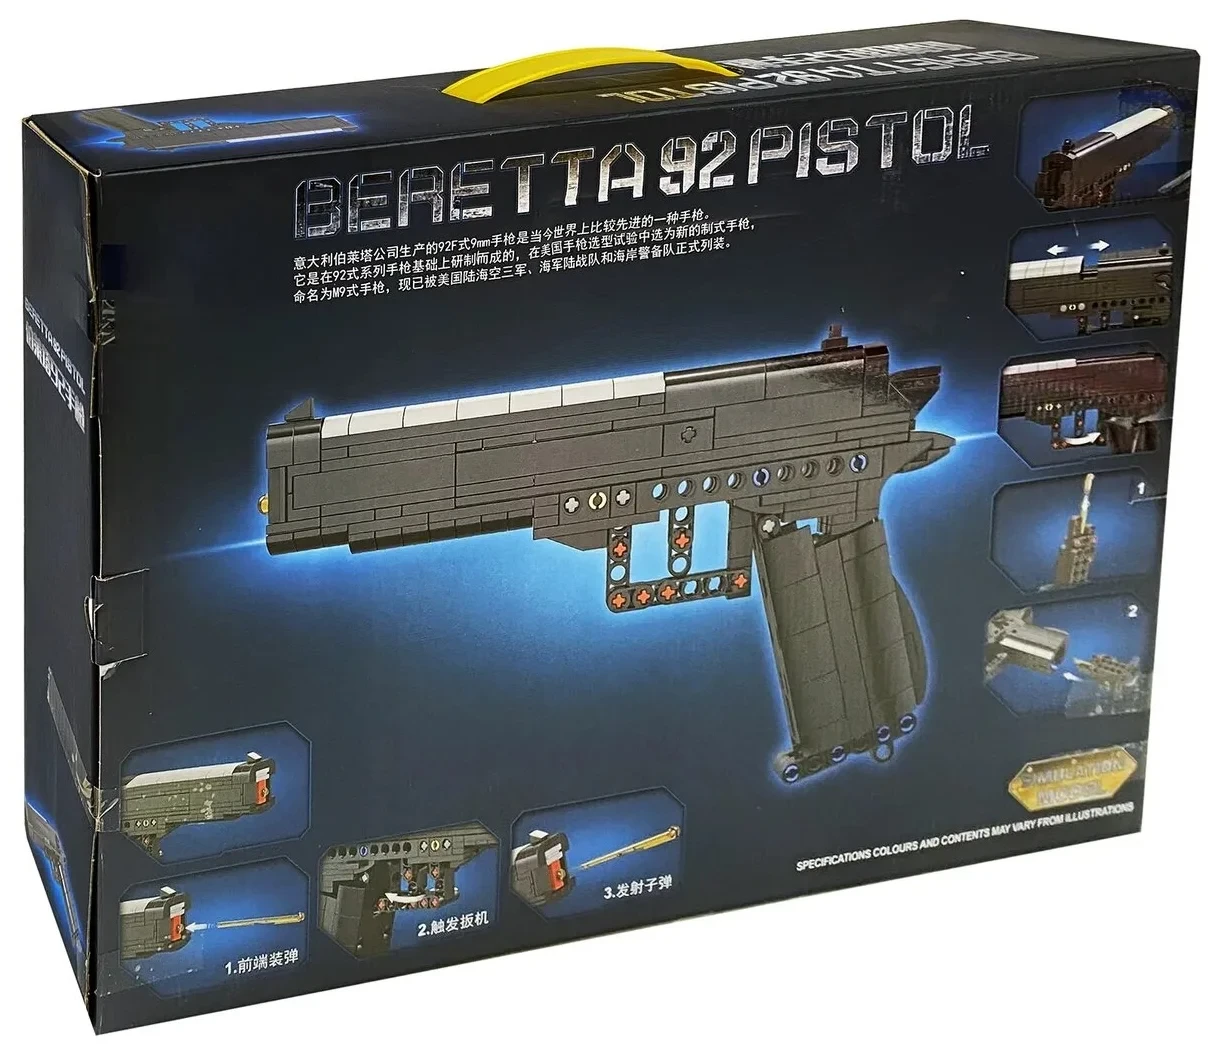 Конструктор LEGO пистолет Beretta 92 pistol